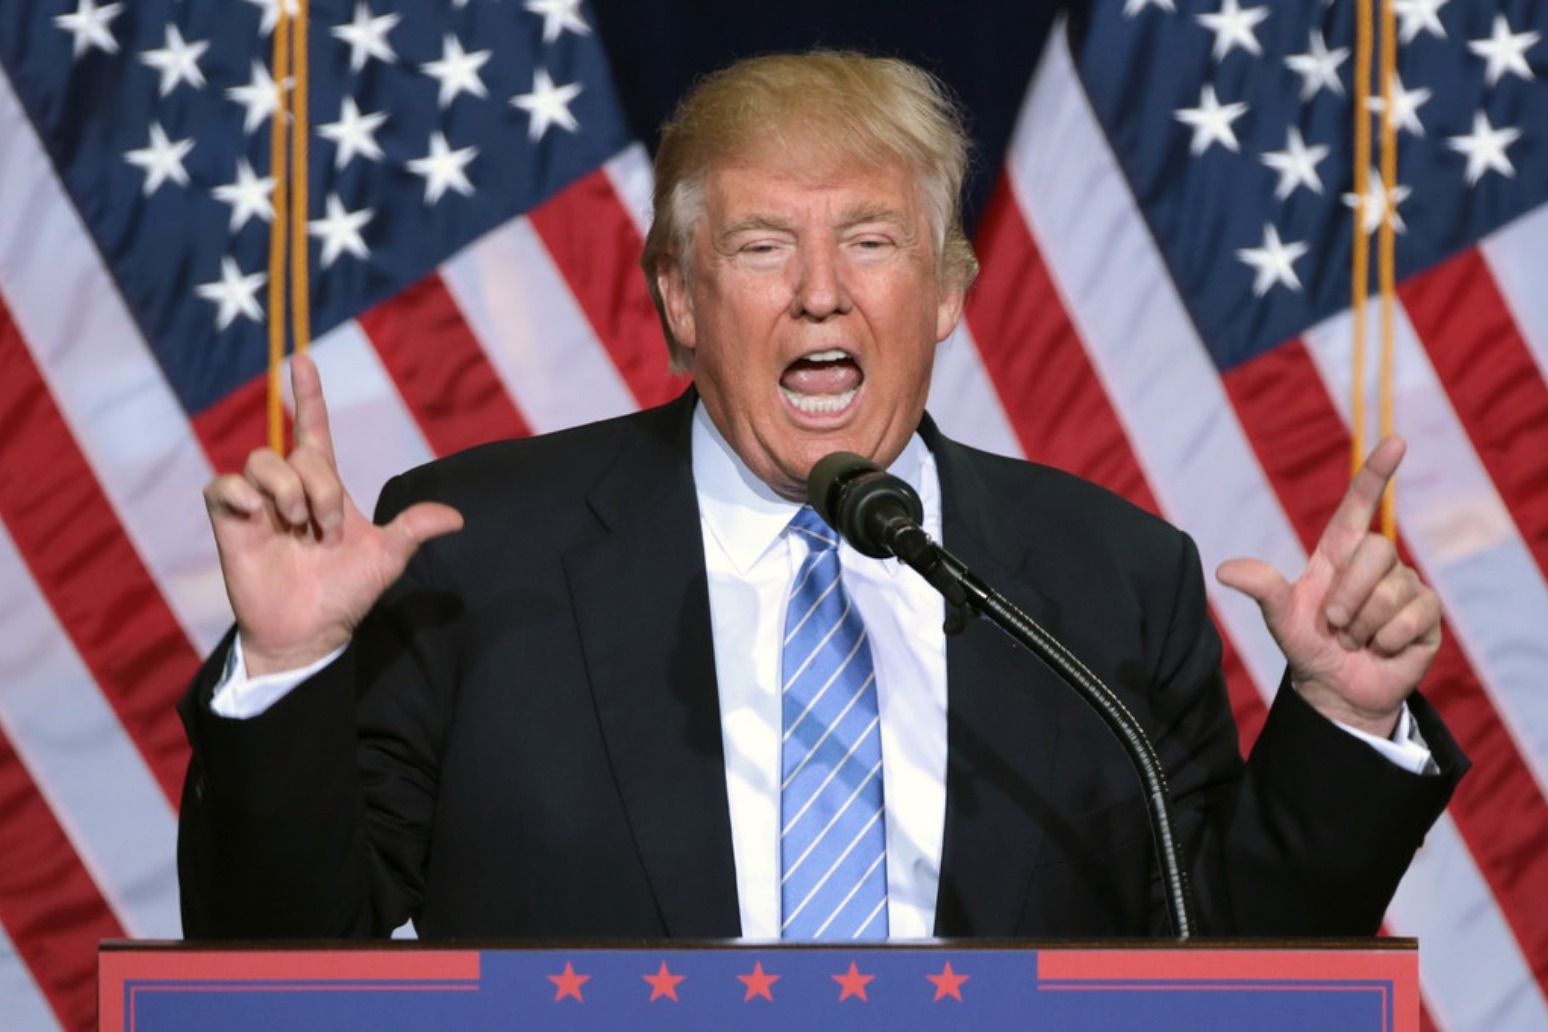 Trump slams Mueller, mocks critics in fiery two-hour speech 